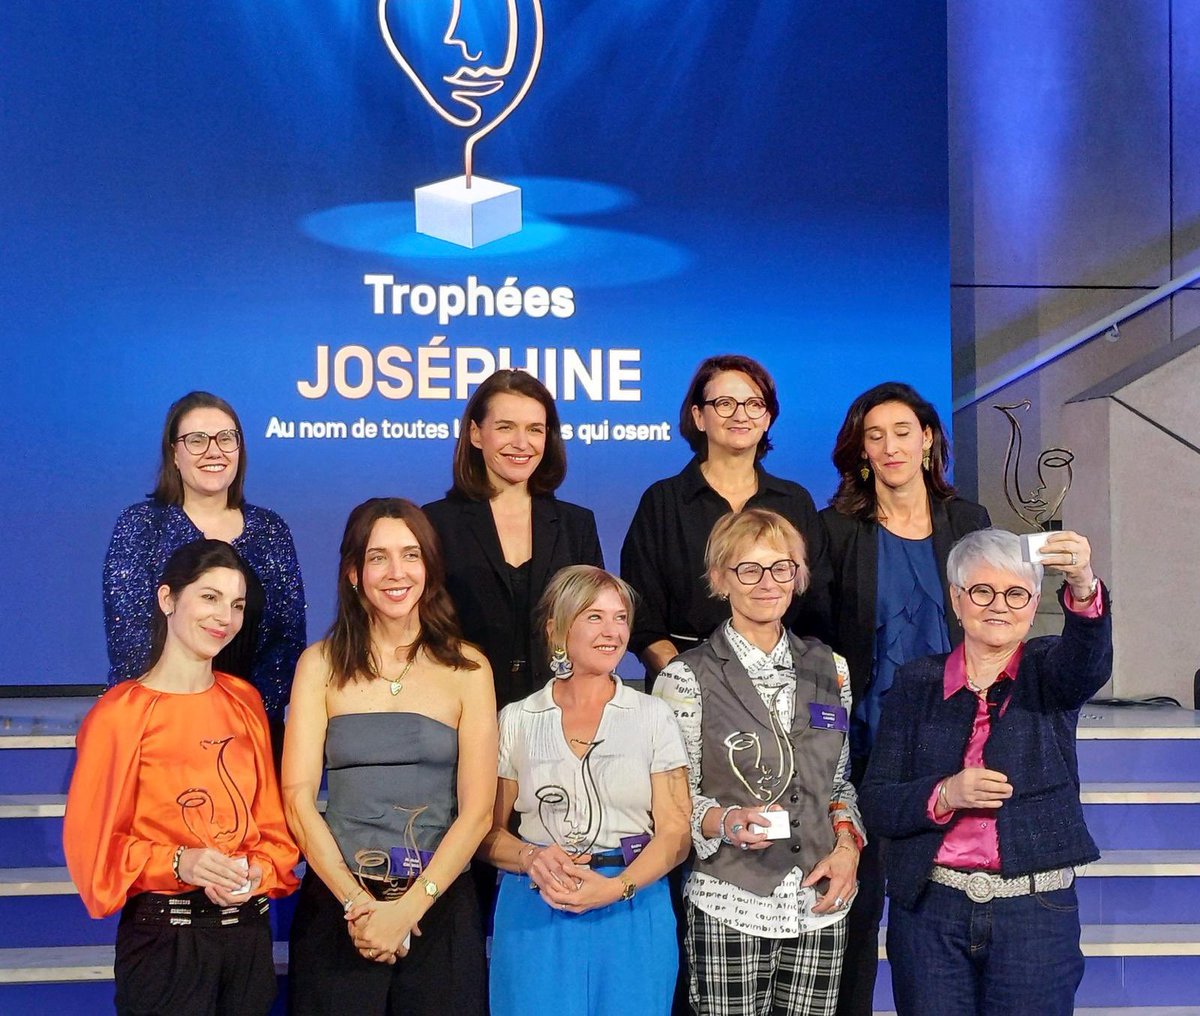 Heureuse d'être présente lors des Trophées Joséphine. Au nom de toutes les femmes qui osent et qui restent authentiques. Moment rempli d'émotion ,de chaleur mais aussi de courage et d'audace.